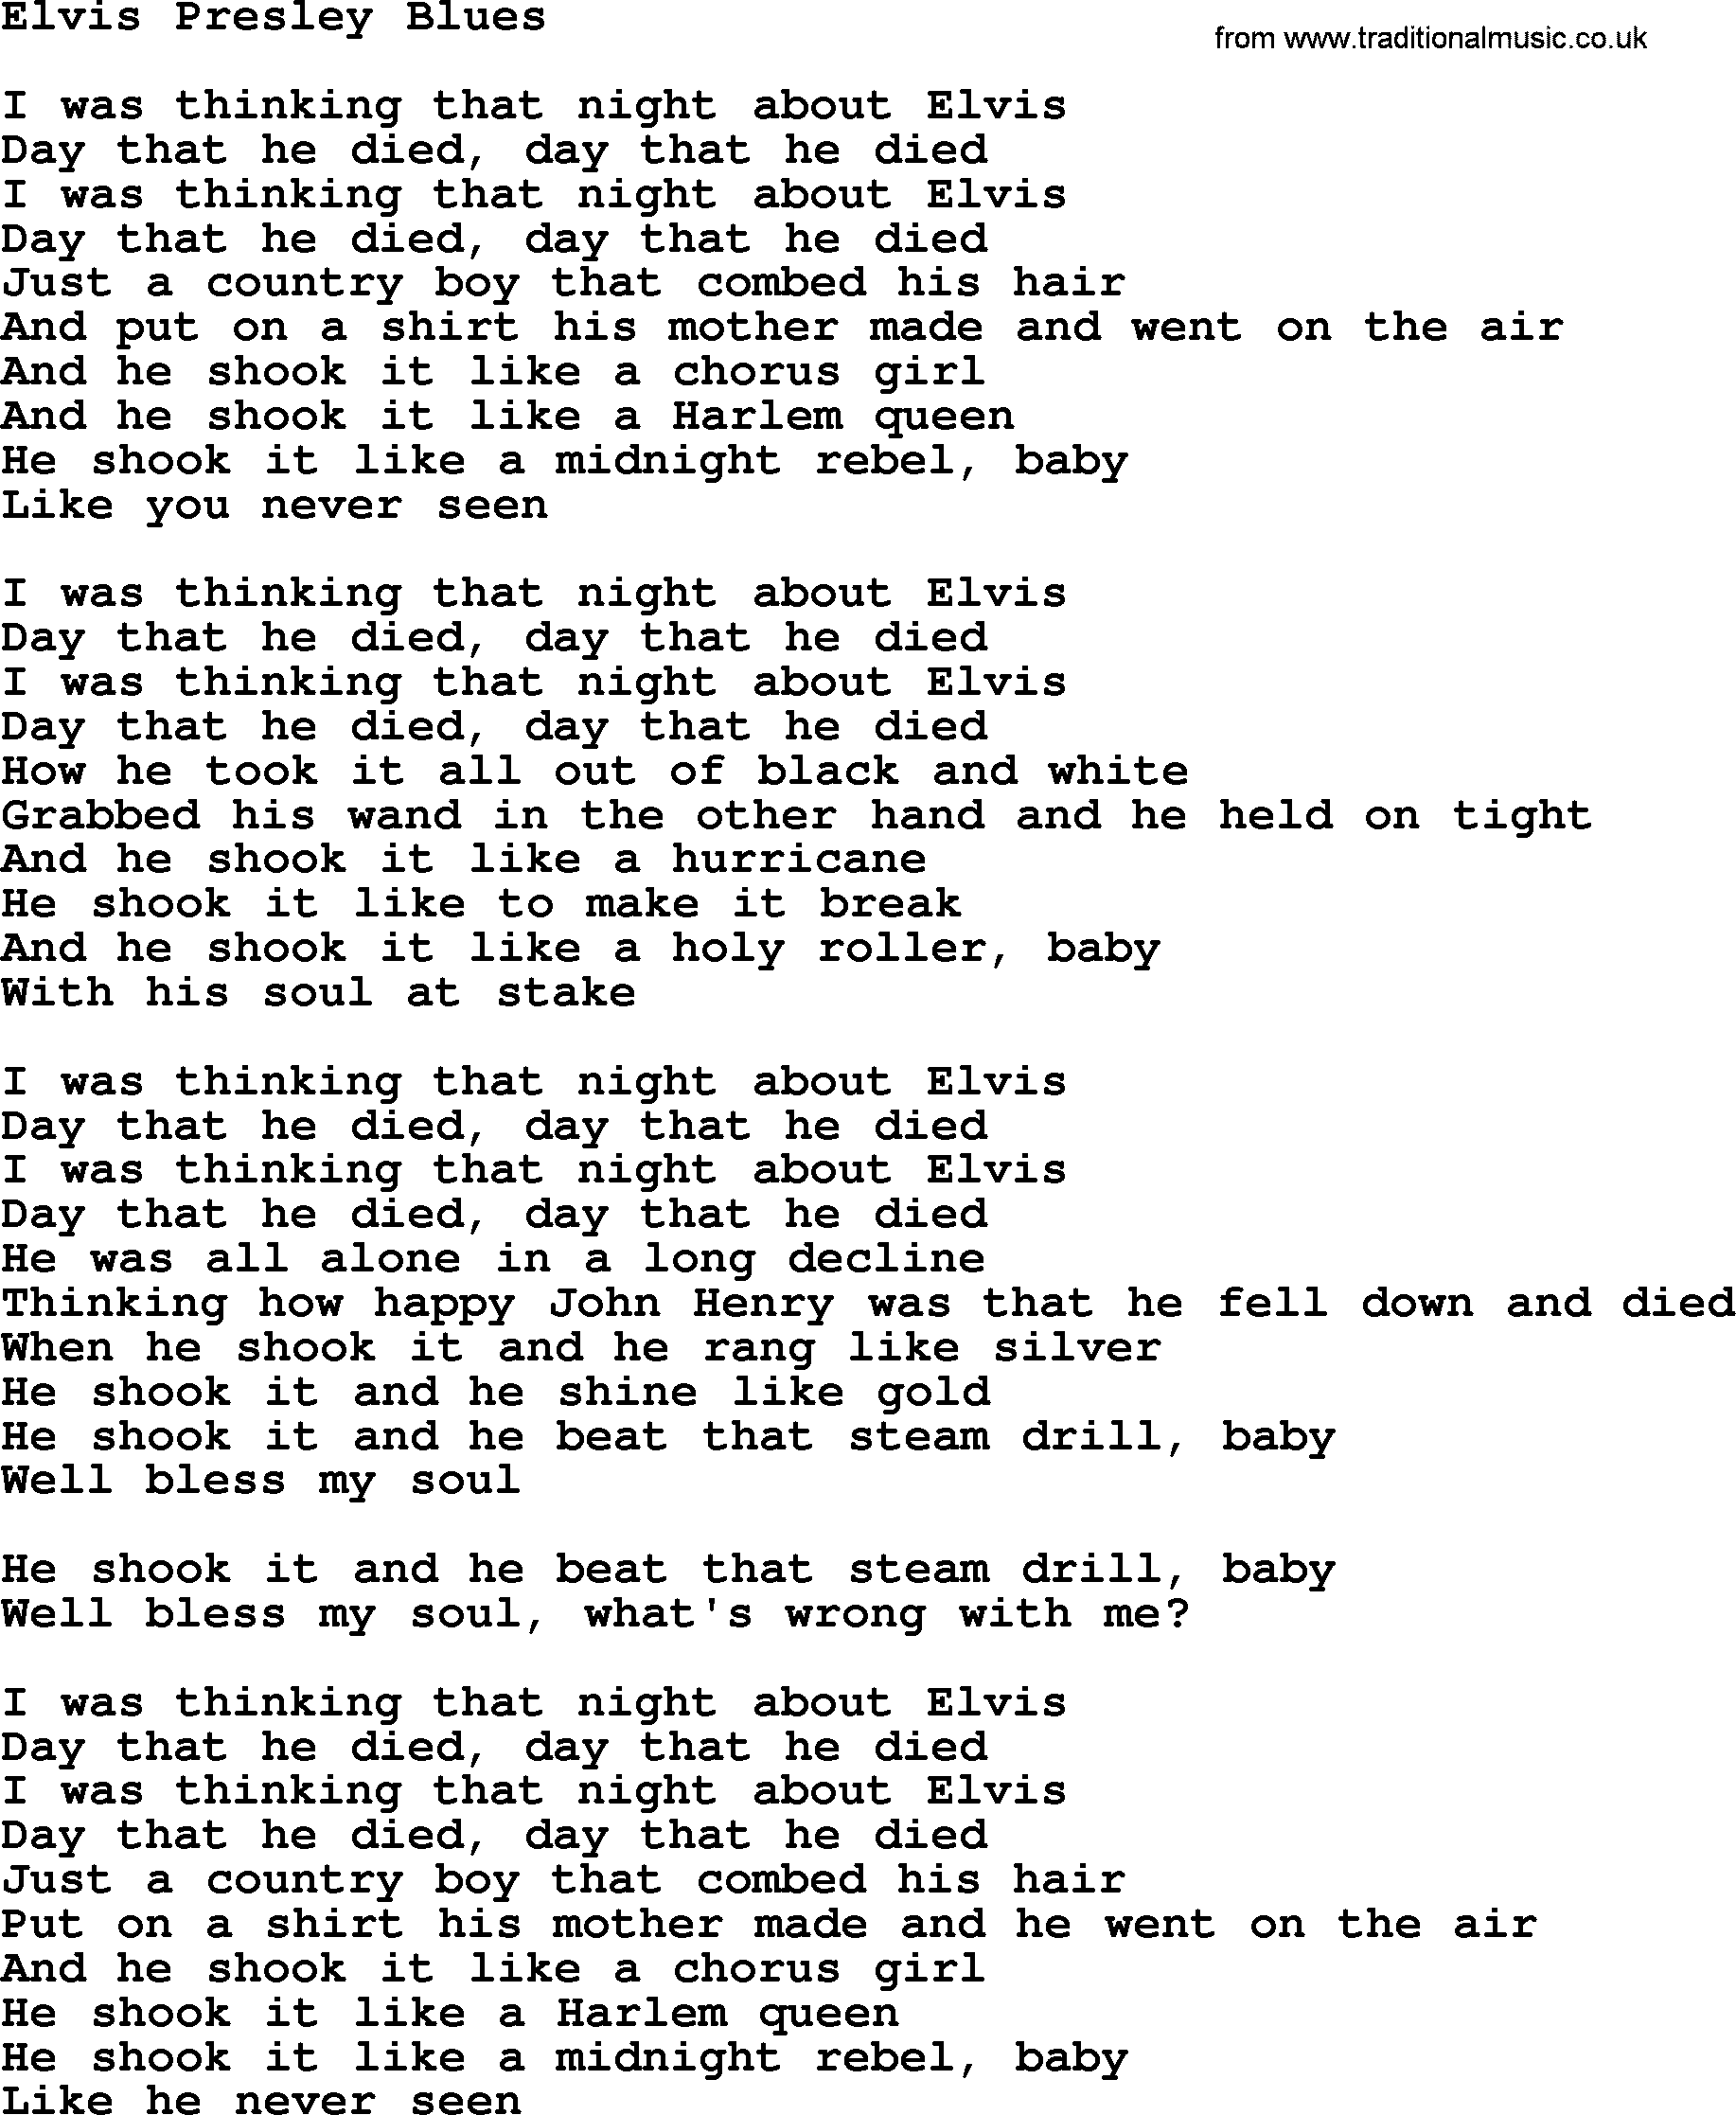 Joan Baez song Elvis Presley Blues, lyrics